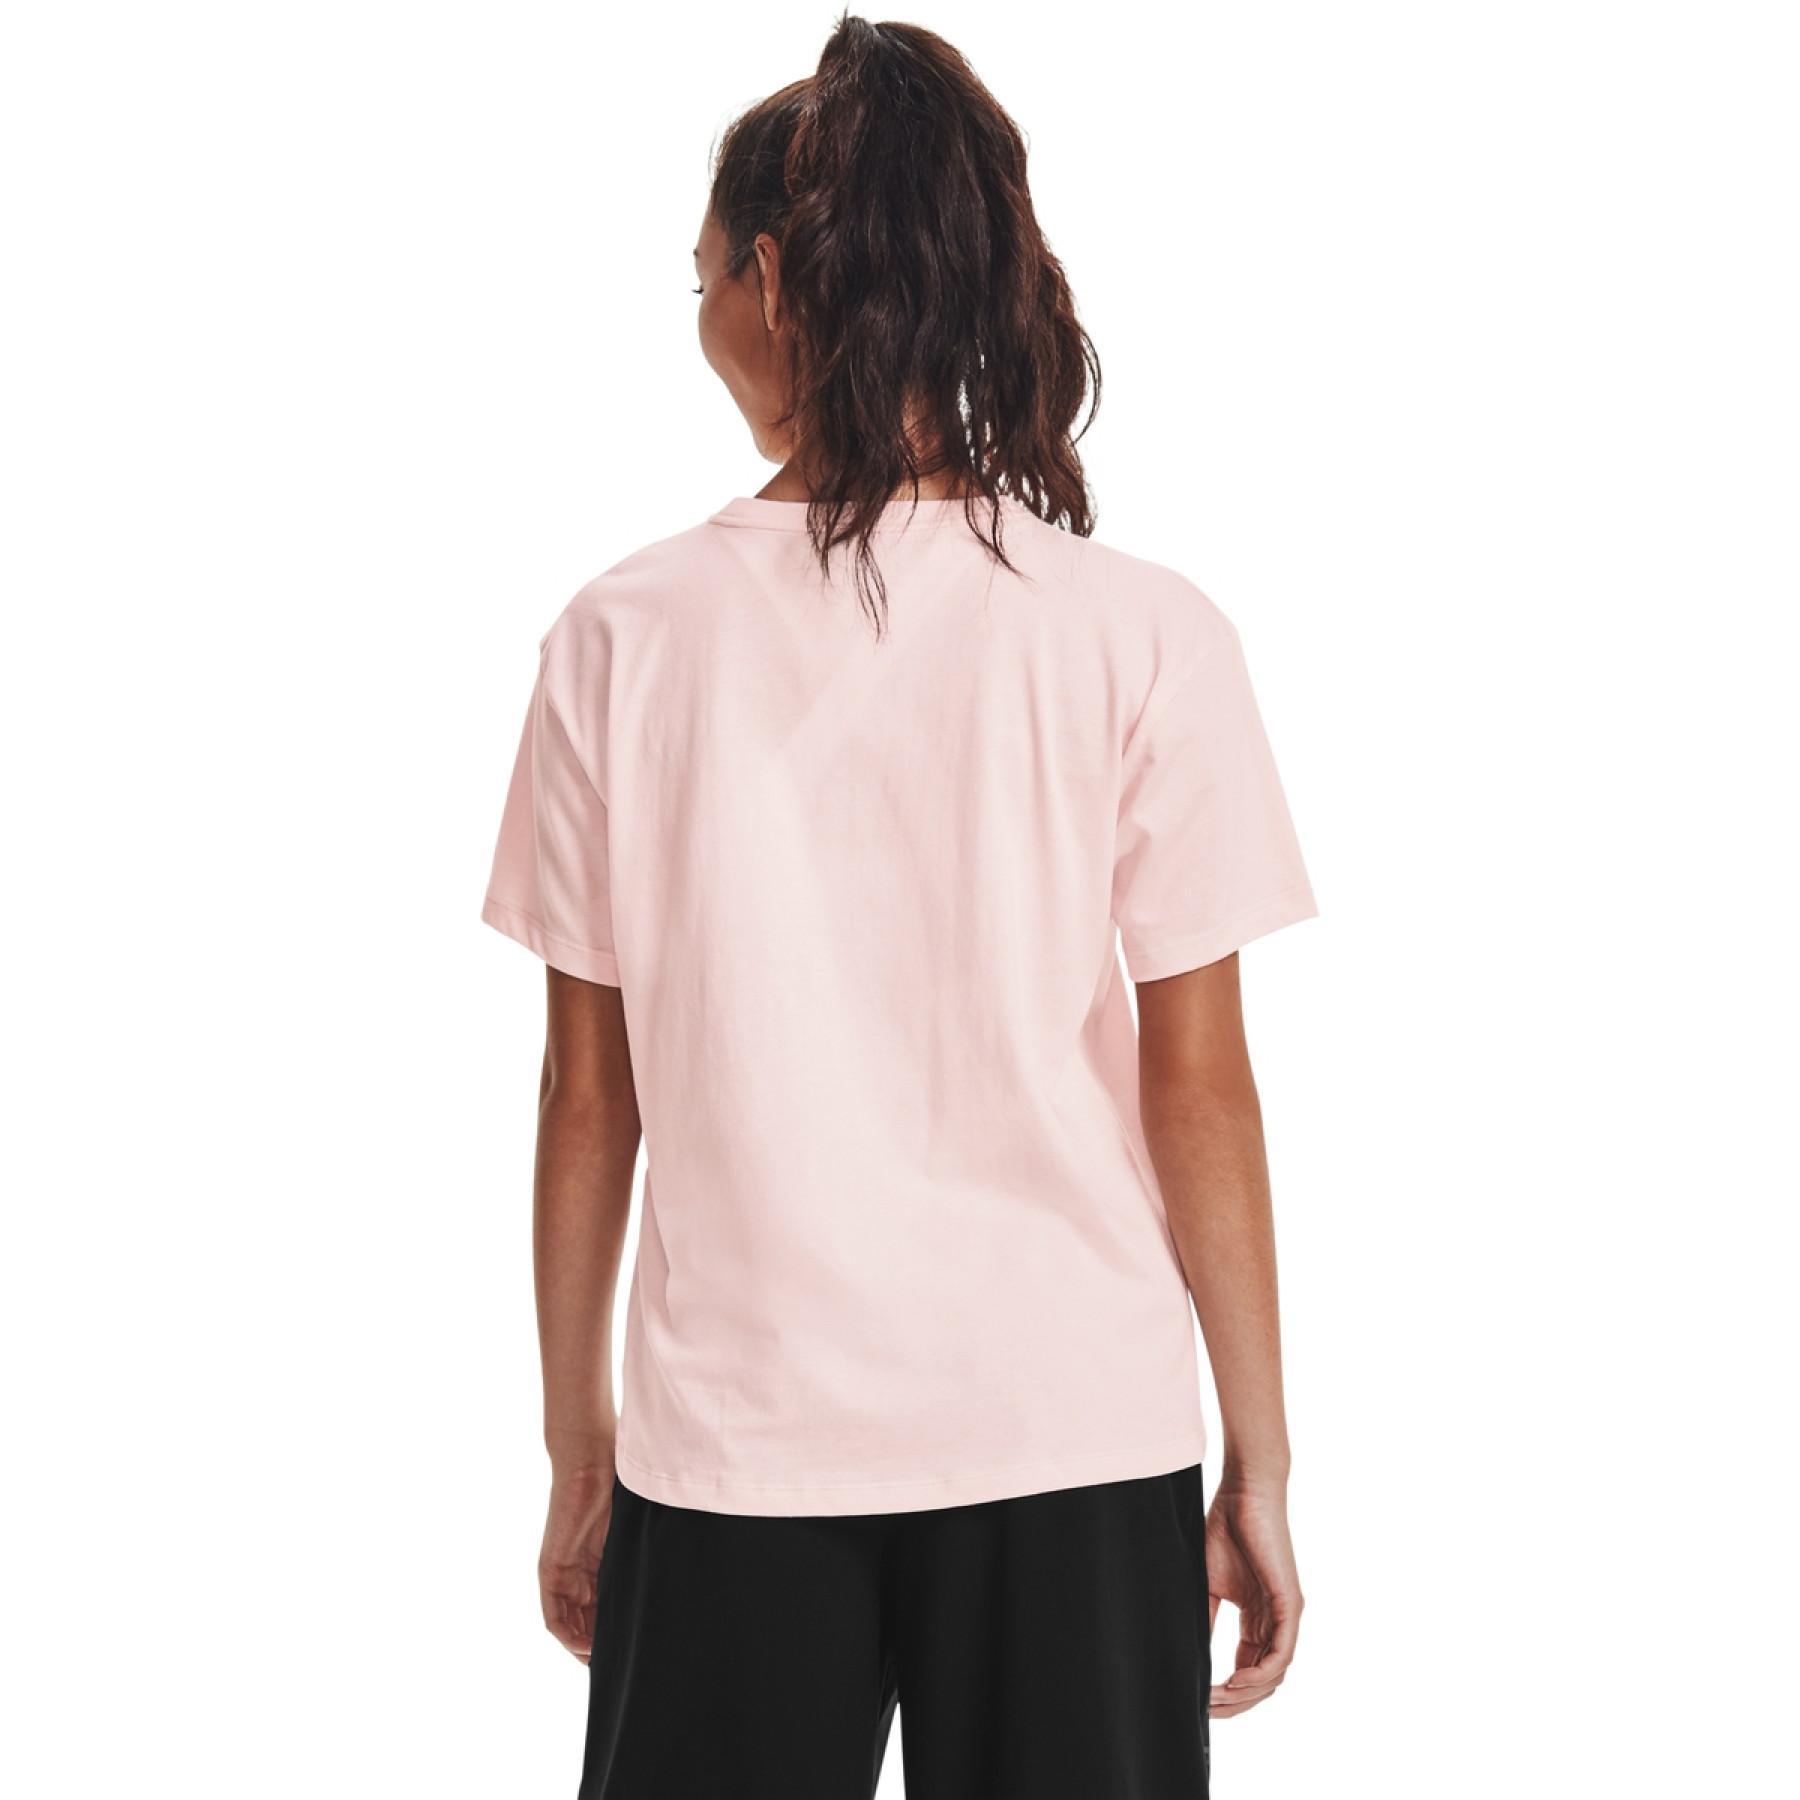 T-shirt femme Under Armour à manches courtes Wordmark Graphic